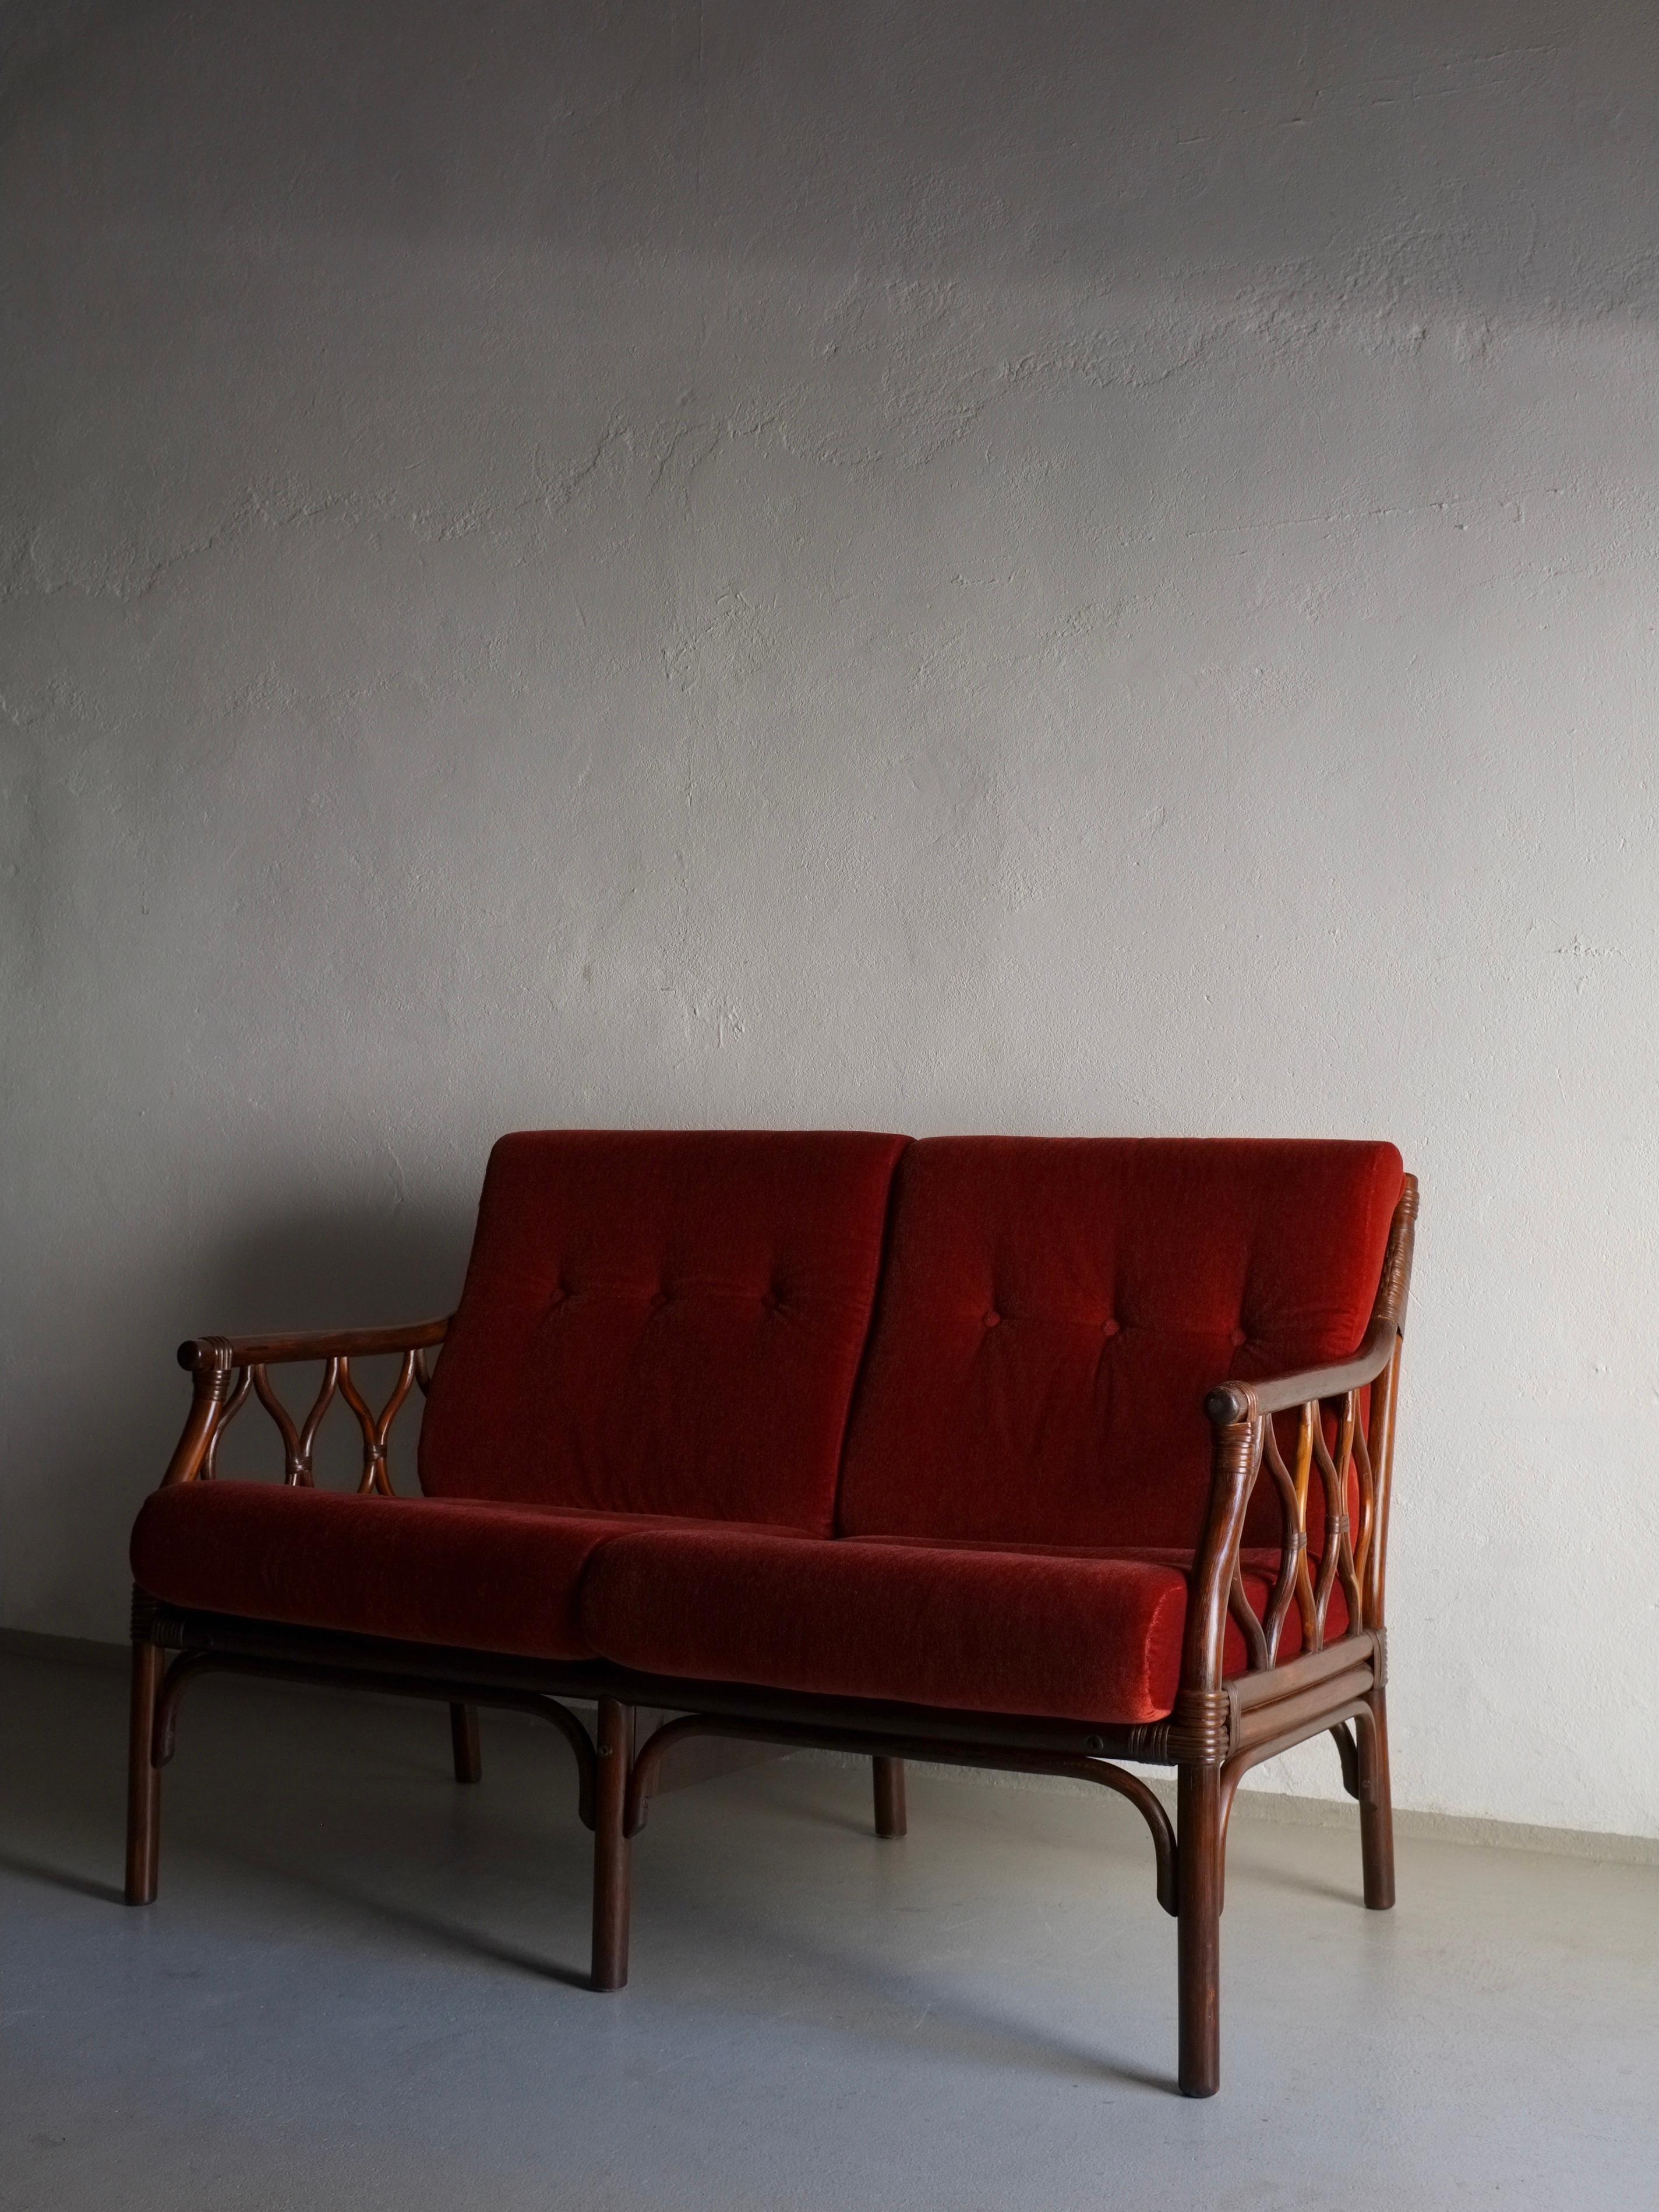 2-Sitzer-Sofa aus dunklem Rattan mit zinnoberrotem Veloursbezug. Ein 3-Sitzer-Sofa, ein Sessel und ein Couchtisch aus diesem Set stehen zur Verfügung.

H(gesamt/Gestell) 84/77 cm, H(Sitz) 44 cm, B 122 cm, T 75 cm